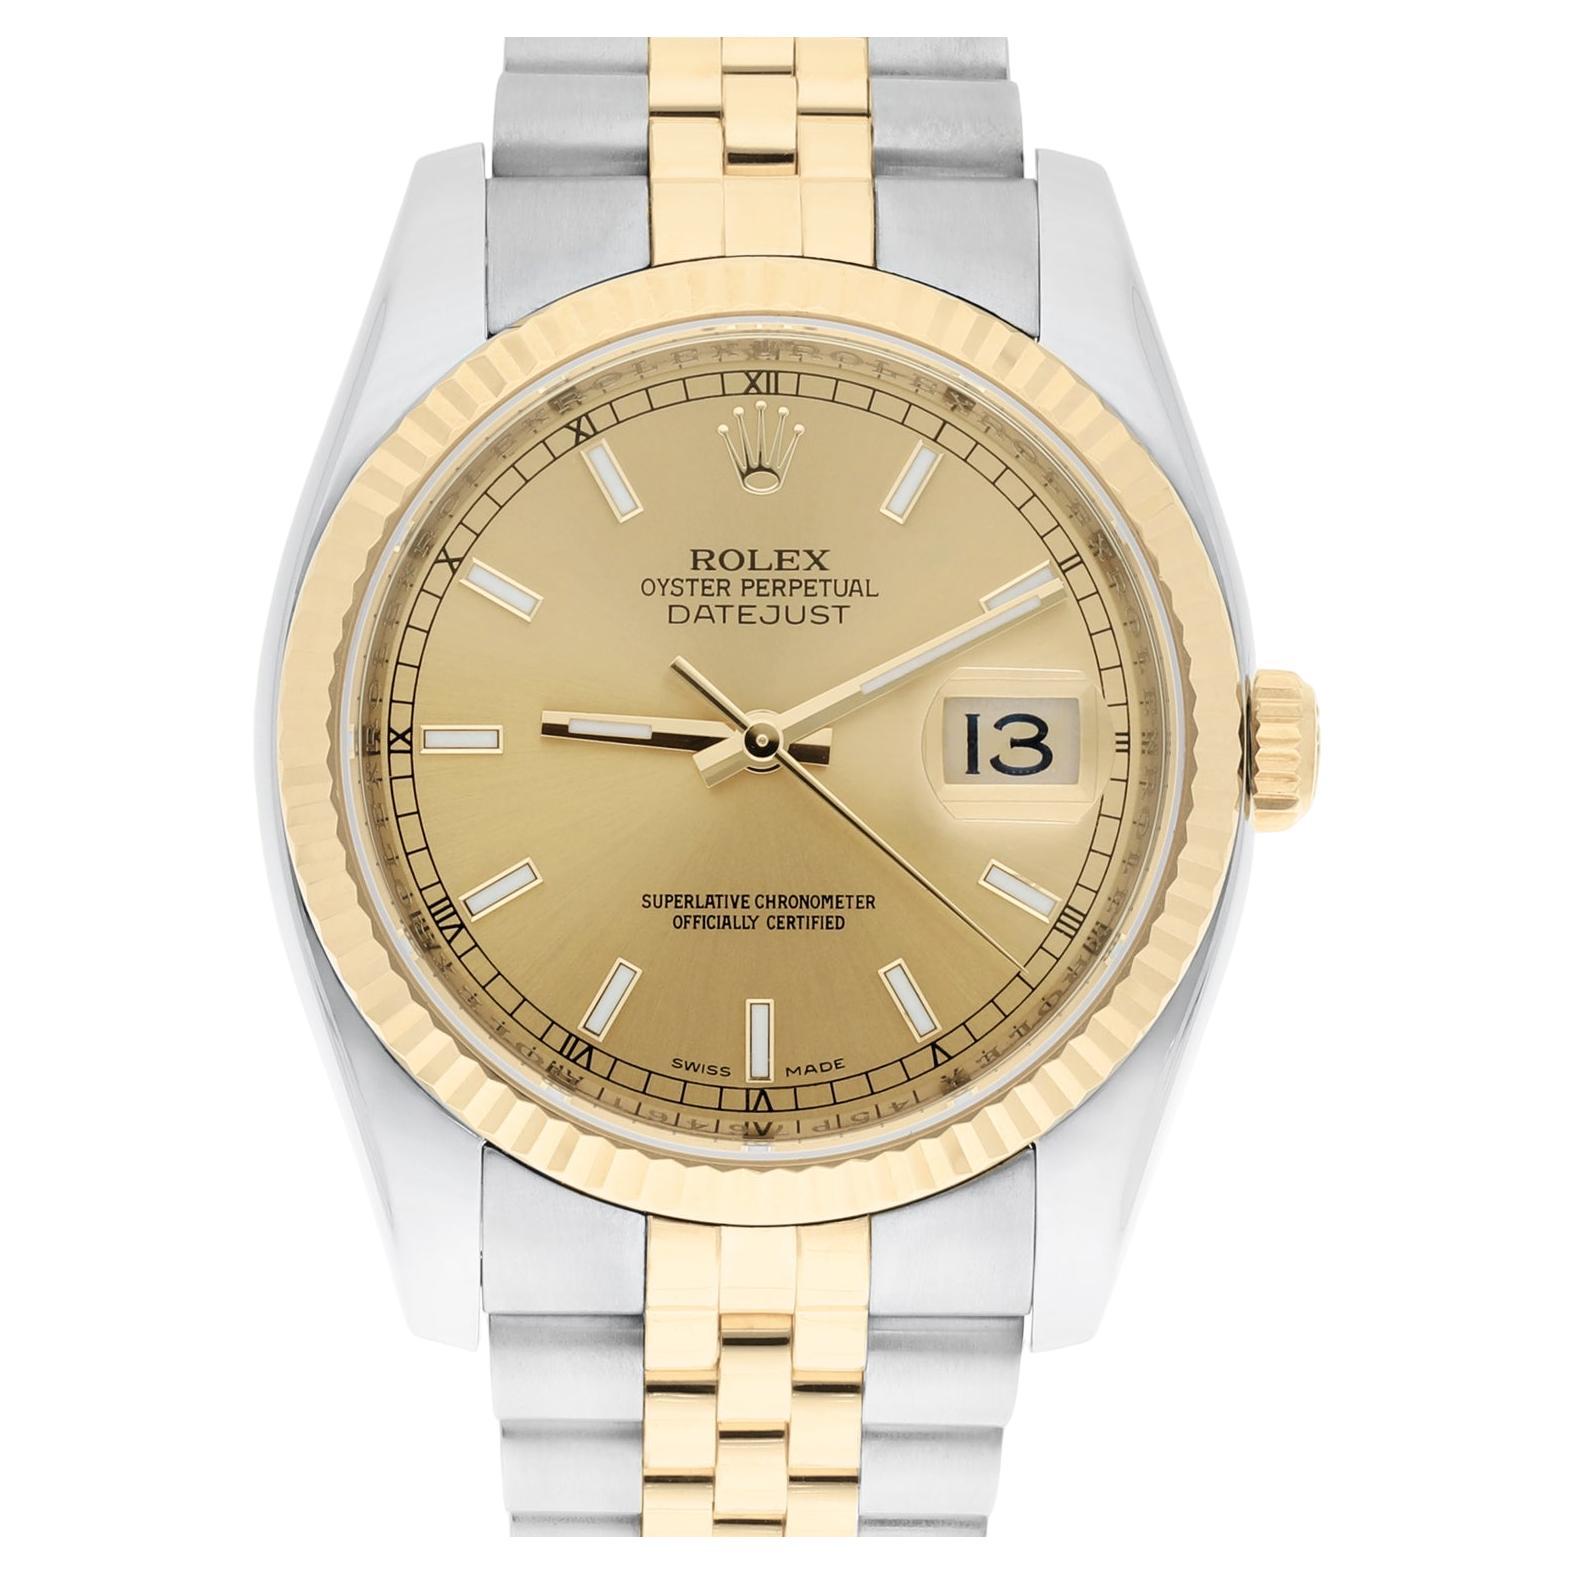 Reloj Rolex Datejust 36 Oro y Acero 116233 Reloj Jubilee Esfera Indice Champagne